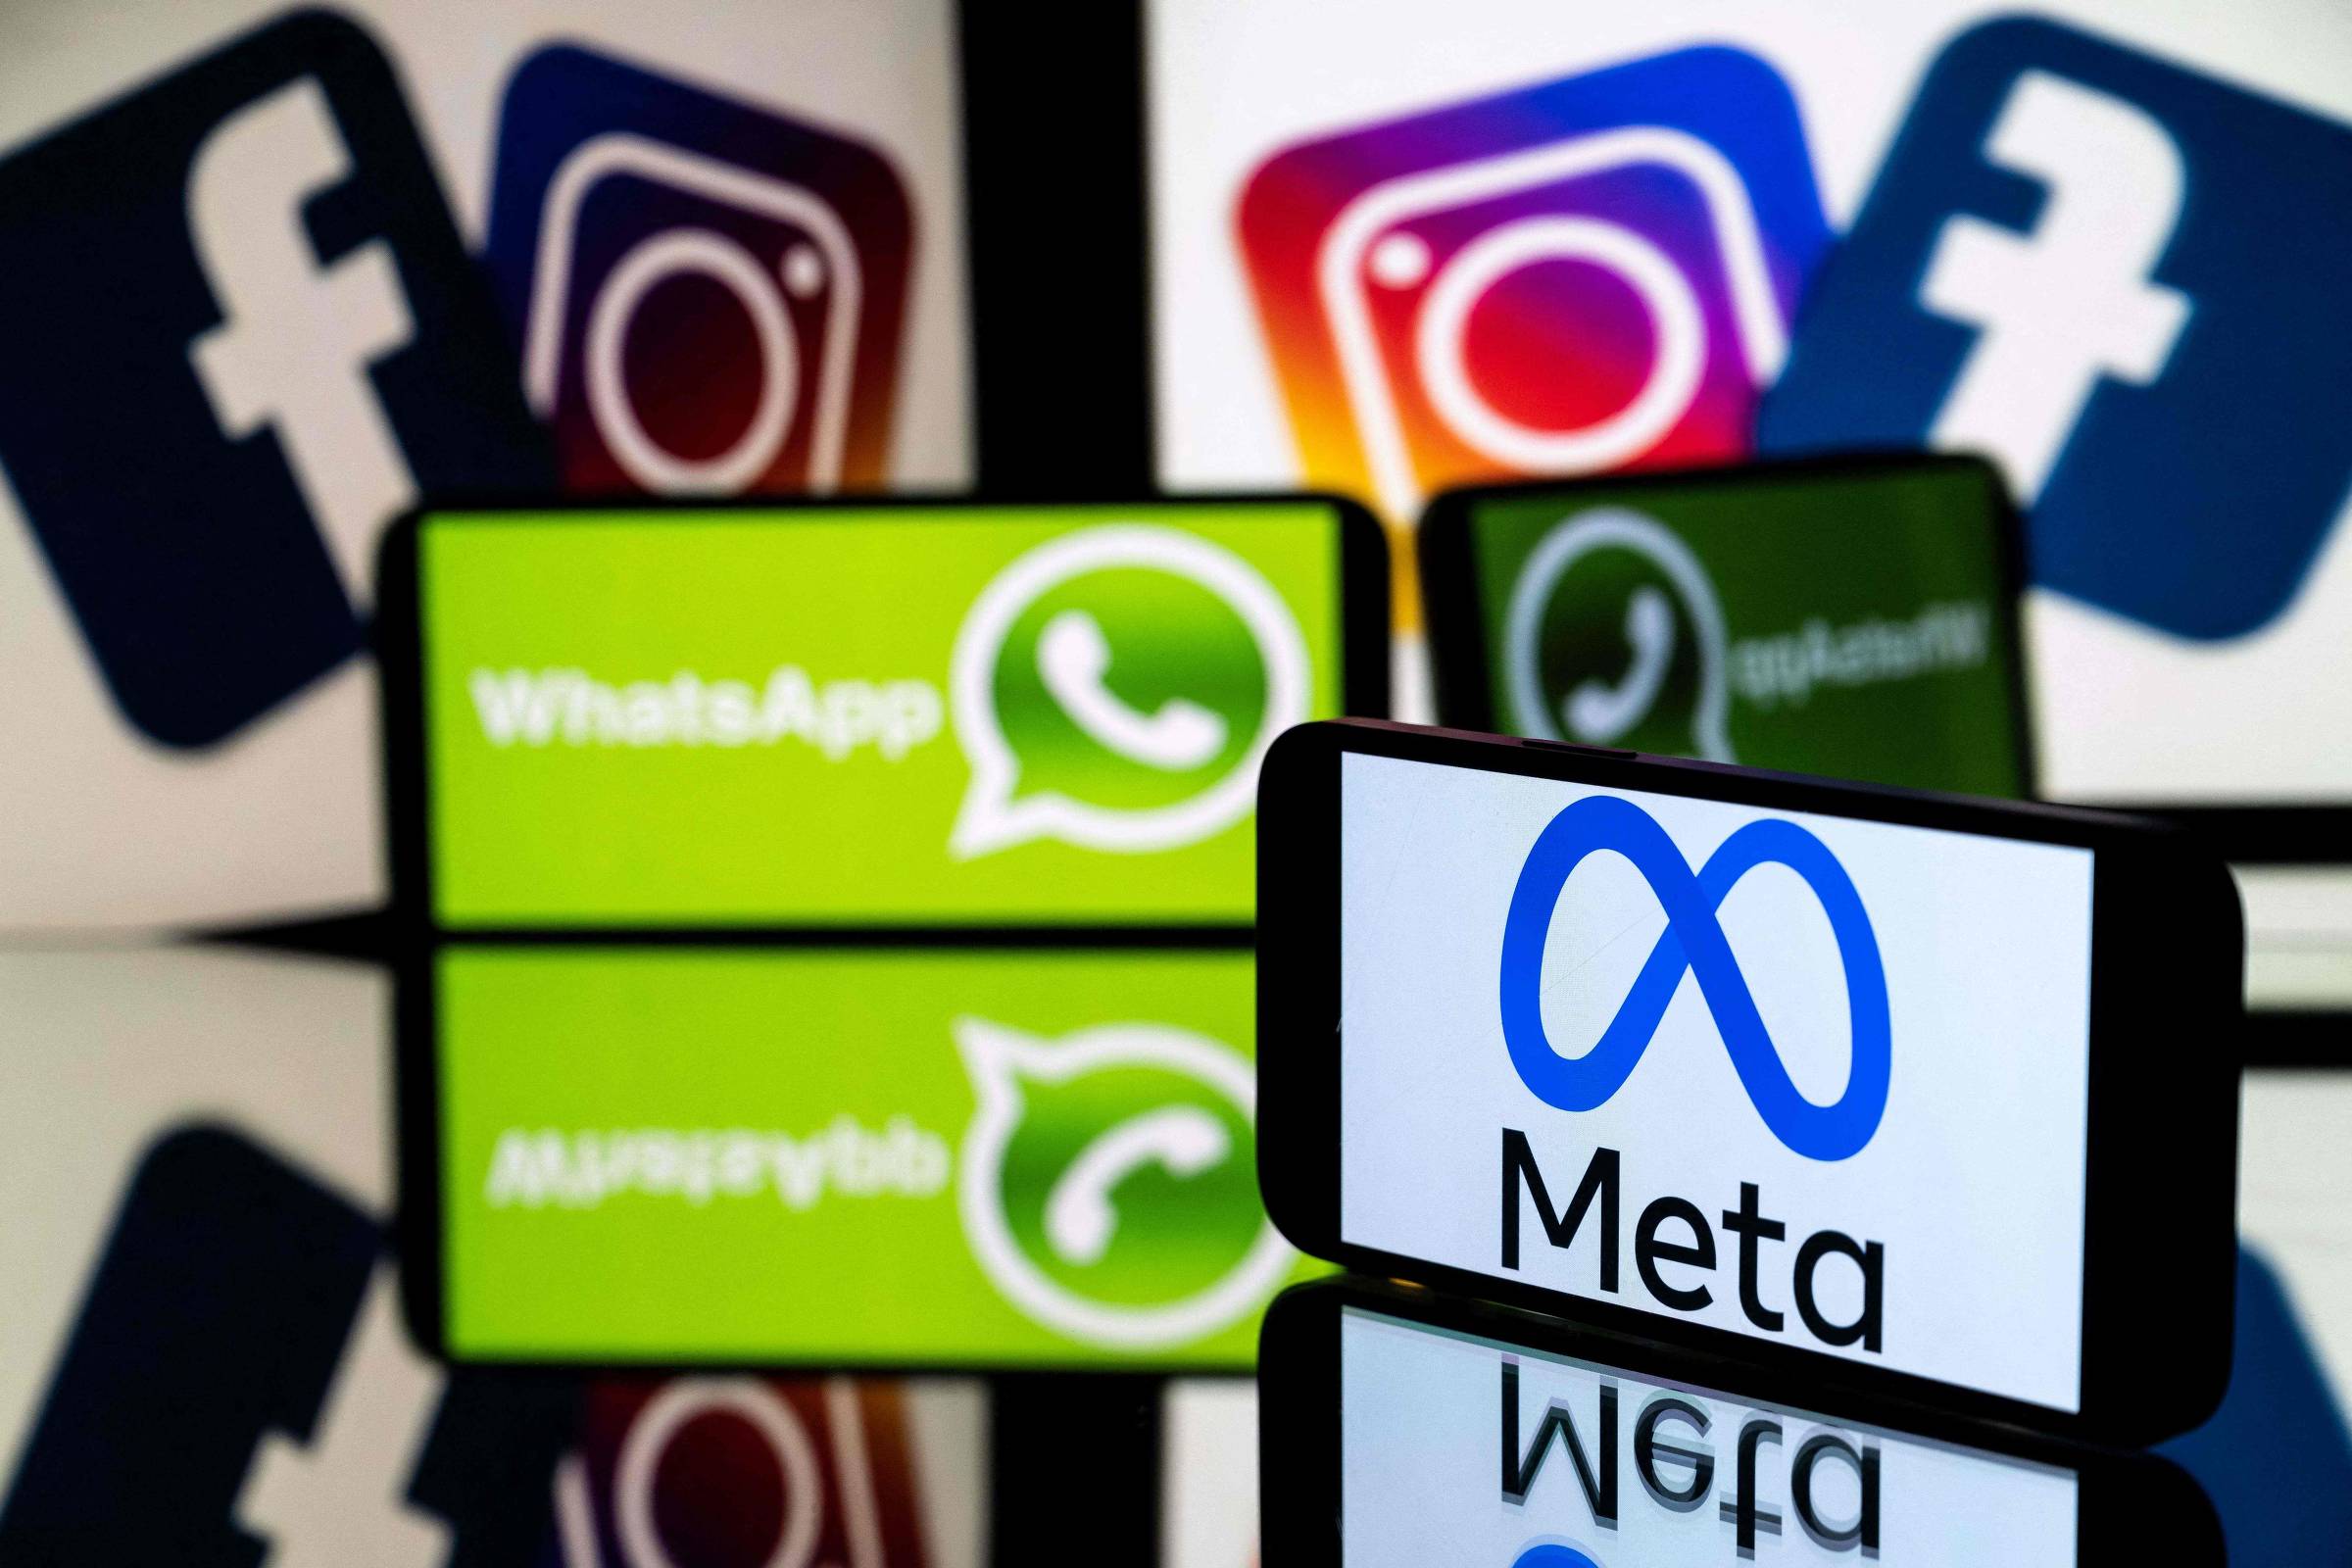  Na Mídia - Brasil entra na linha de frente pela regulação das  redes sociais